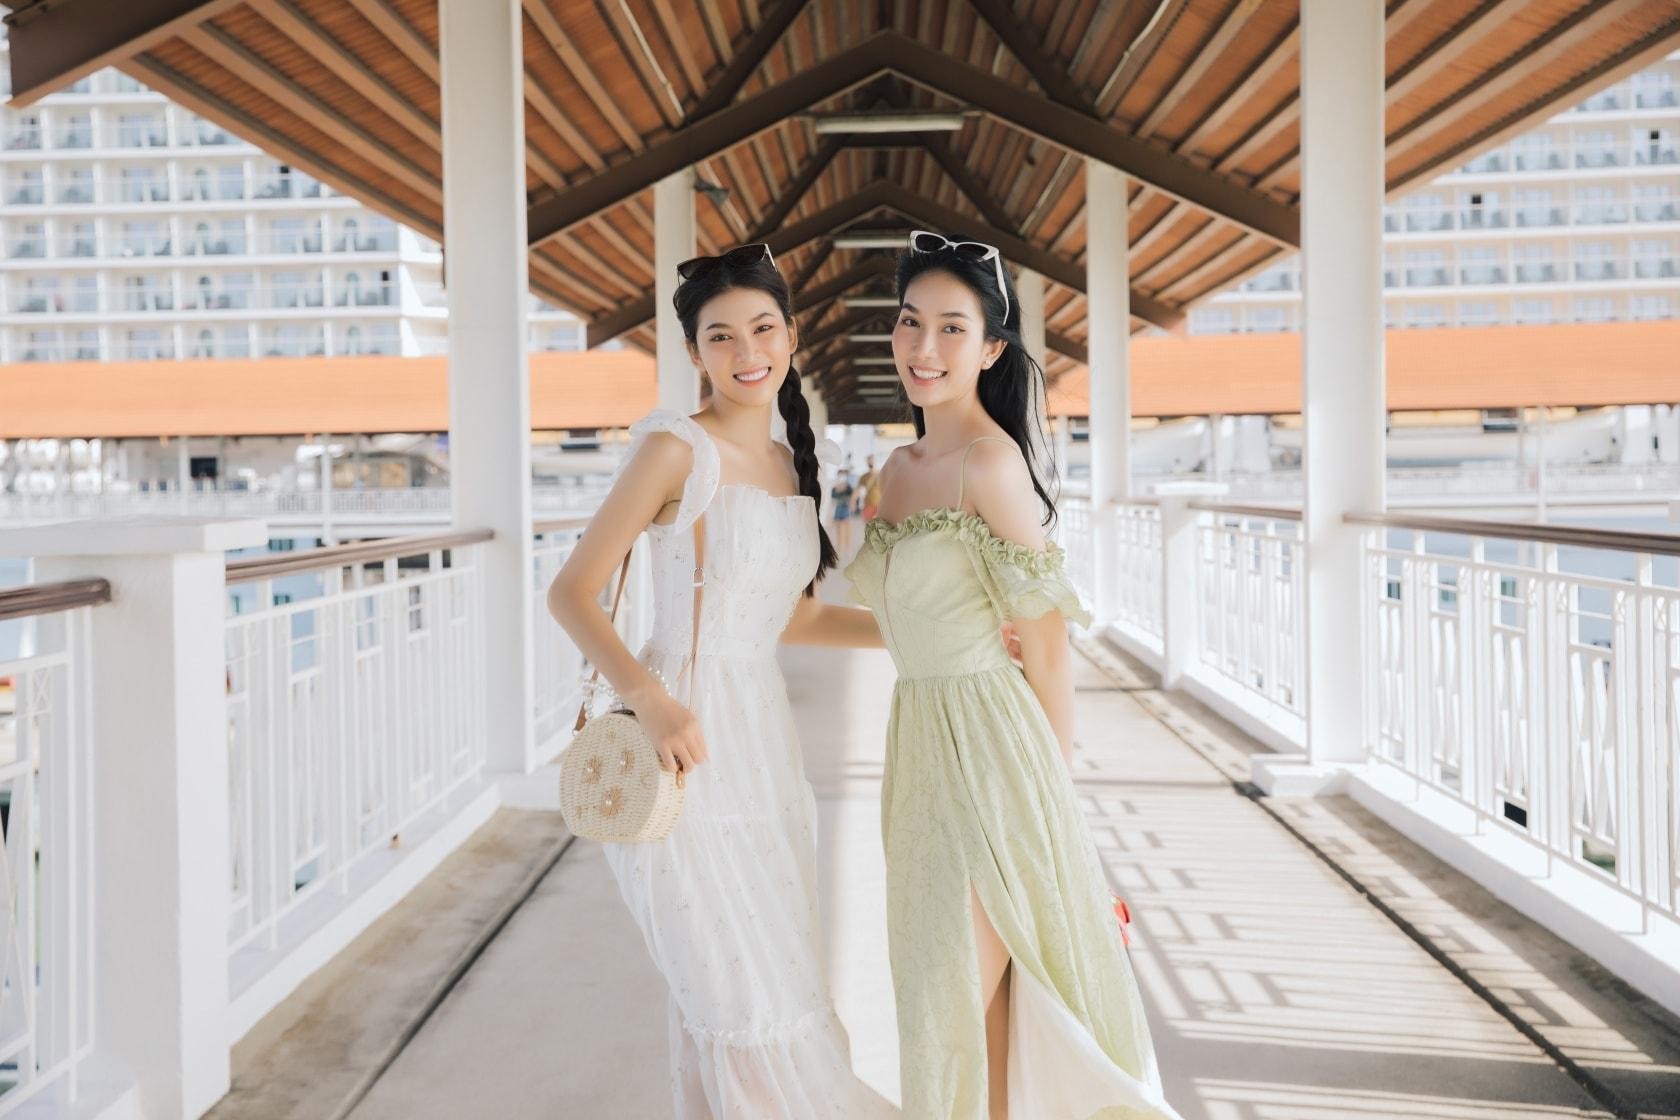 Kỳ Duyên thả dáng nóng bỏng với váy cut-out, Khánh Vân mặc váy dạ hội sexy cách điệu từ áo tắm-9